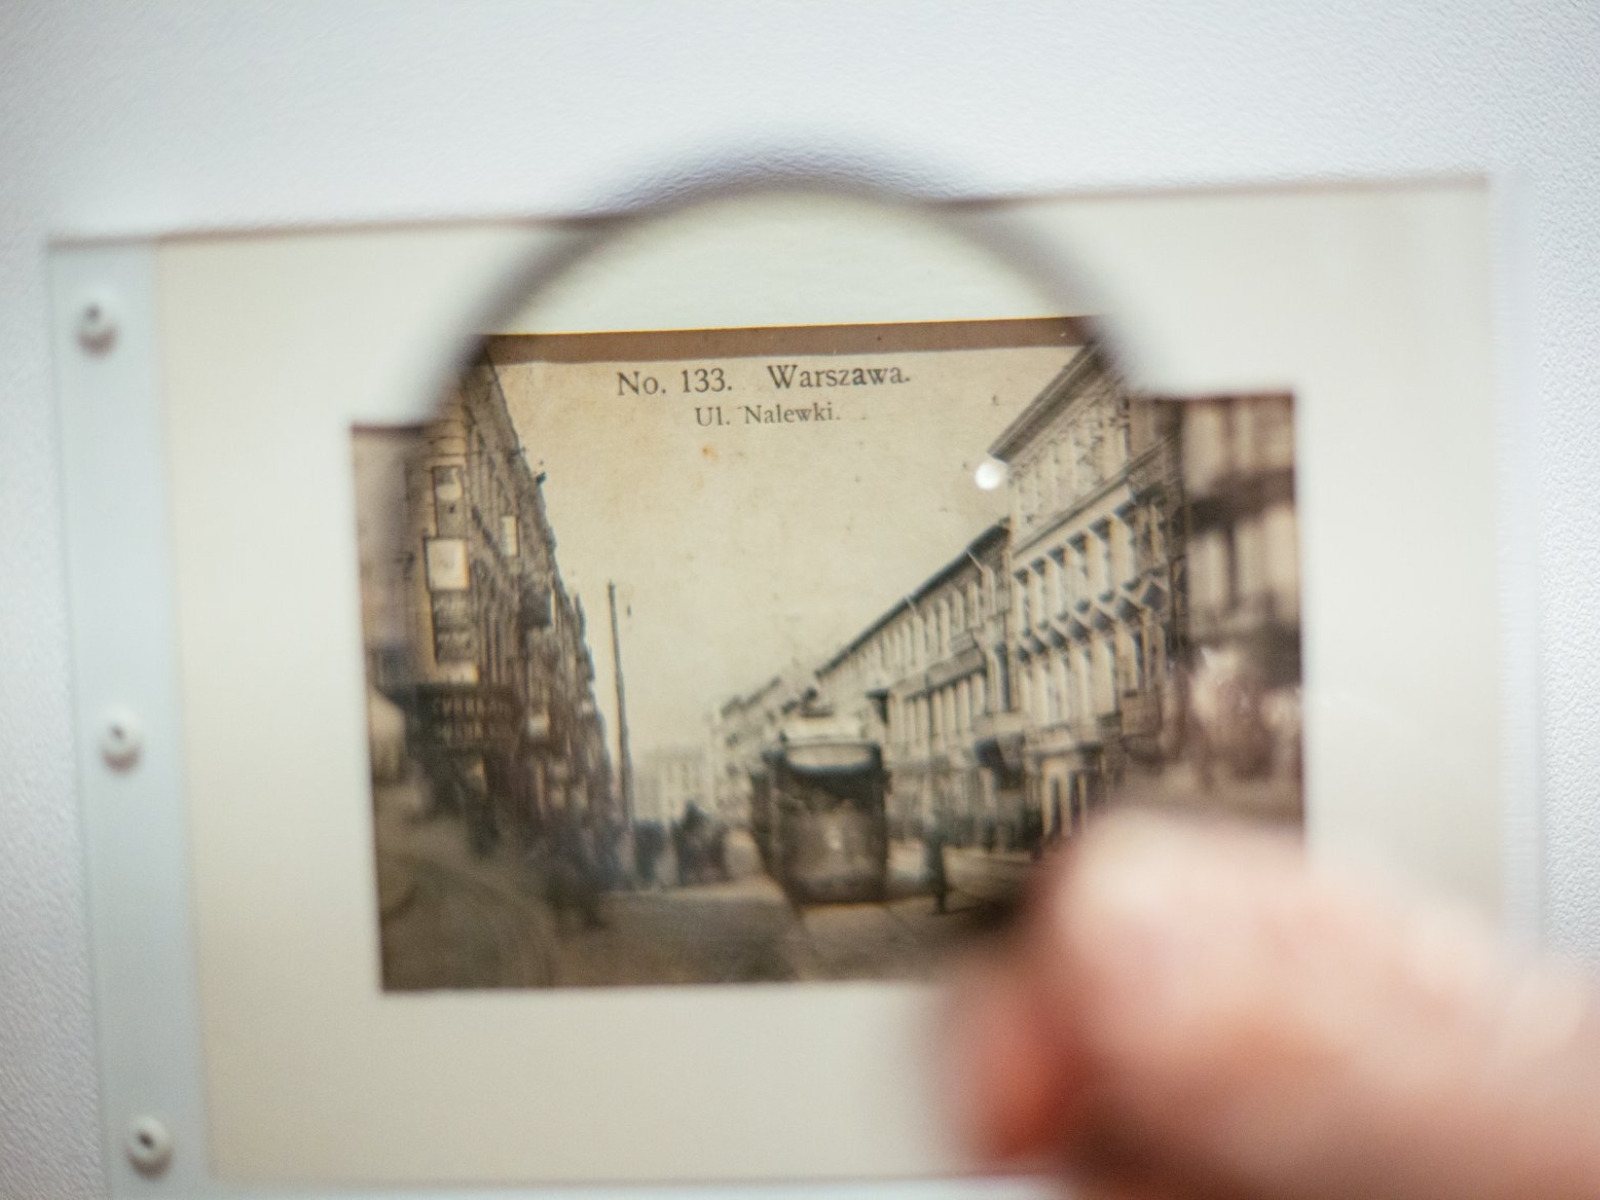 Ktoś przykłada lupę do zdjęcia archiwalnego warszawskiej ulicy Nalewki.